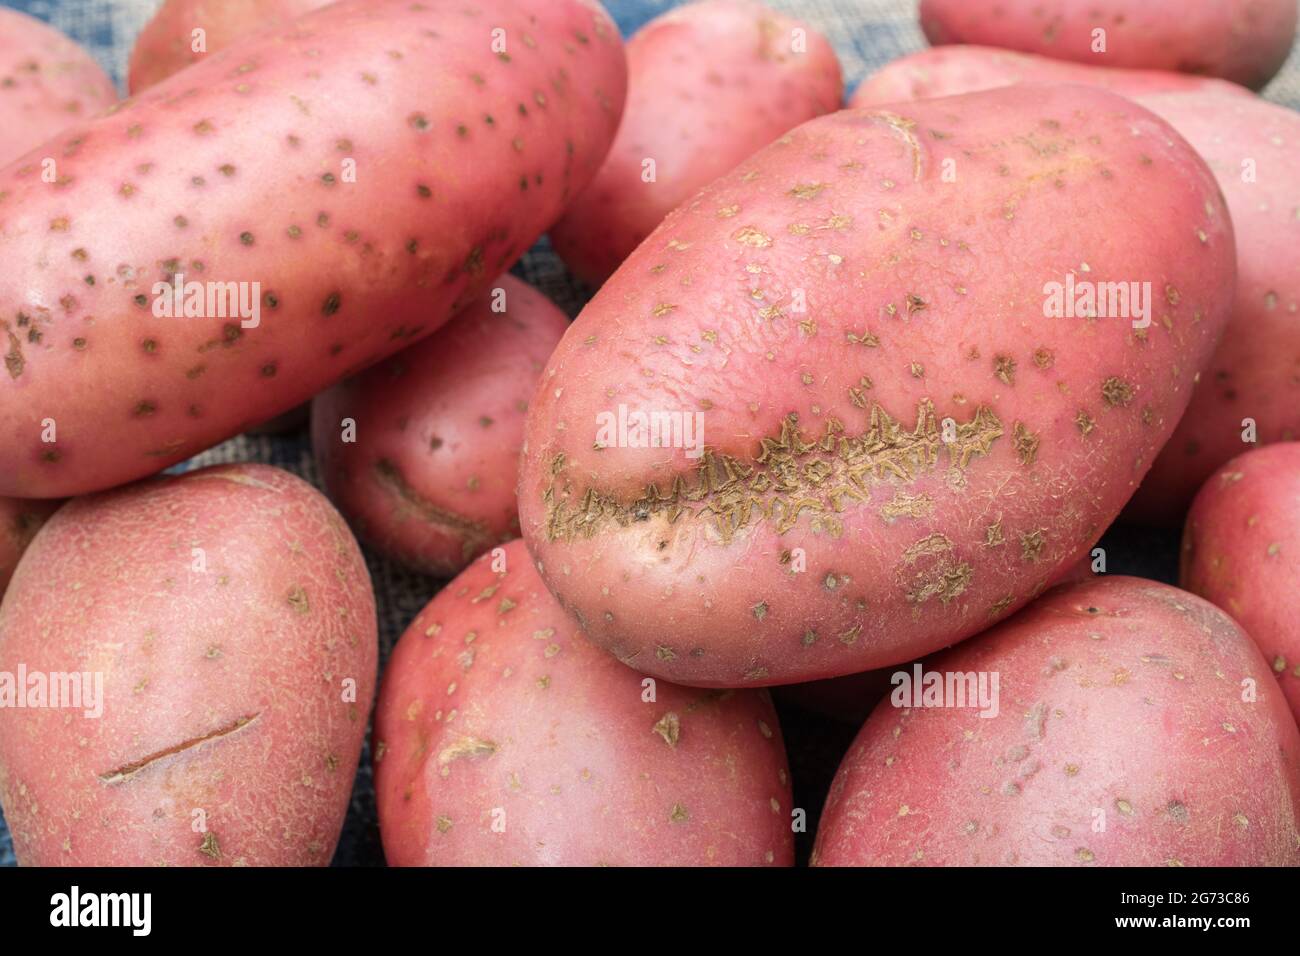 Rote/rotbraune Kartoffeln, die in Großbritannien angebaut werden. Die Kartoffeln weisen eine gewisse Krankheit auf [was ein gewöhnlicher Schorf oder vielleicht ein pulverförmiger Schorf sein kann]. Stockfoto